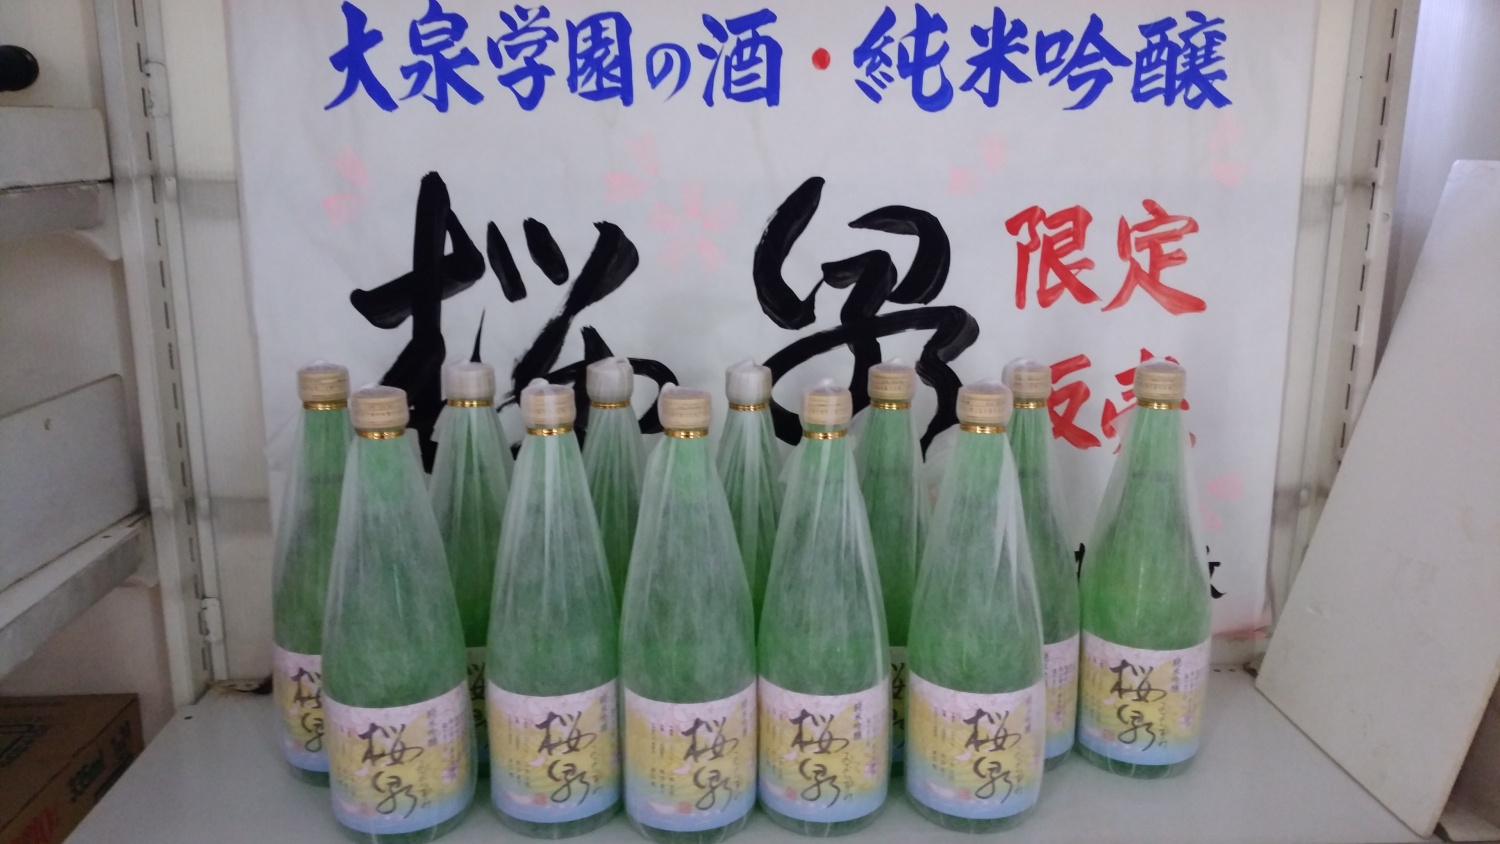 大泉学園のお酒・桜泉（おおいずみ）今年も発売されました 画像